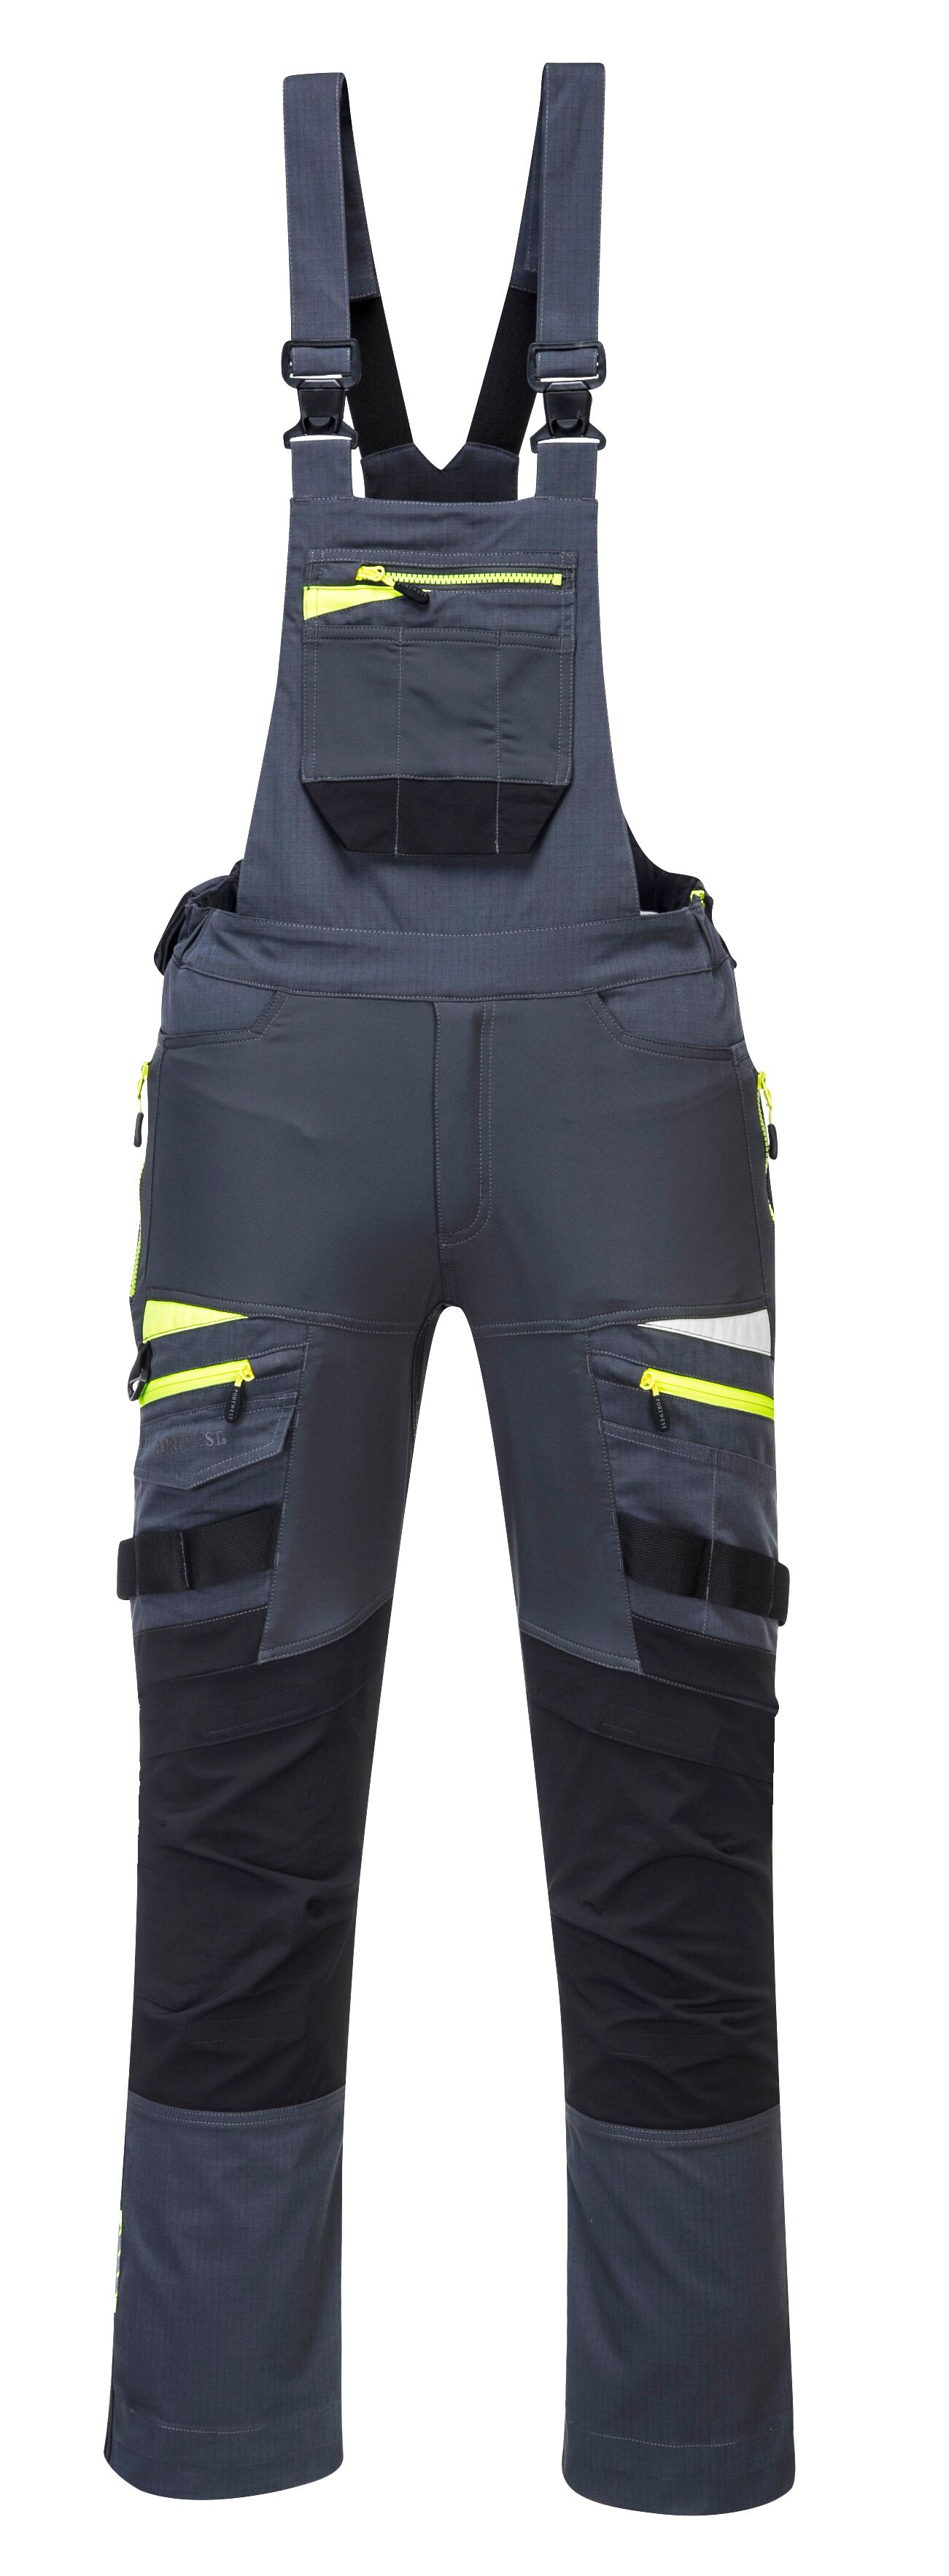 DX4 pracovní laclové kalhoty Barva: tmavá břidlice, Velikost: S